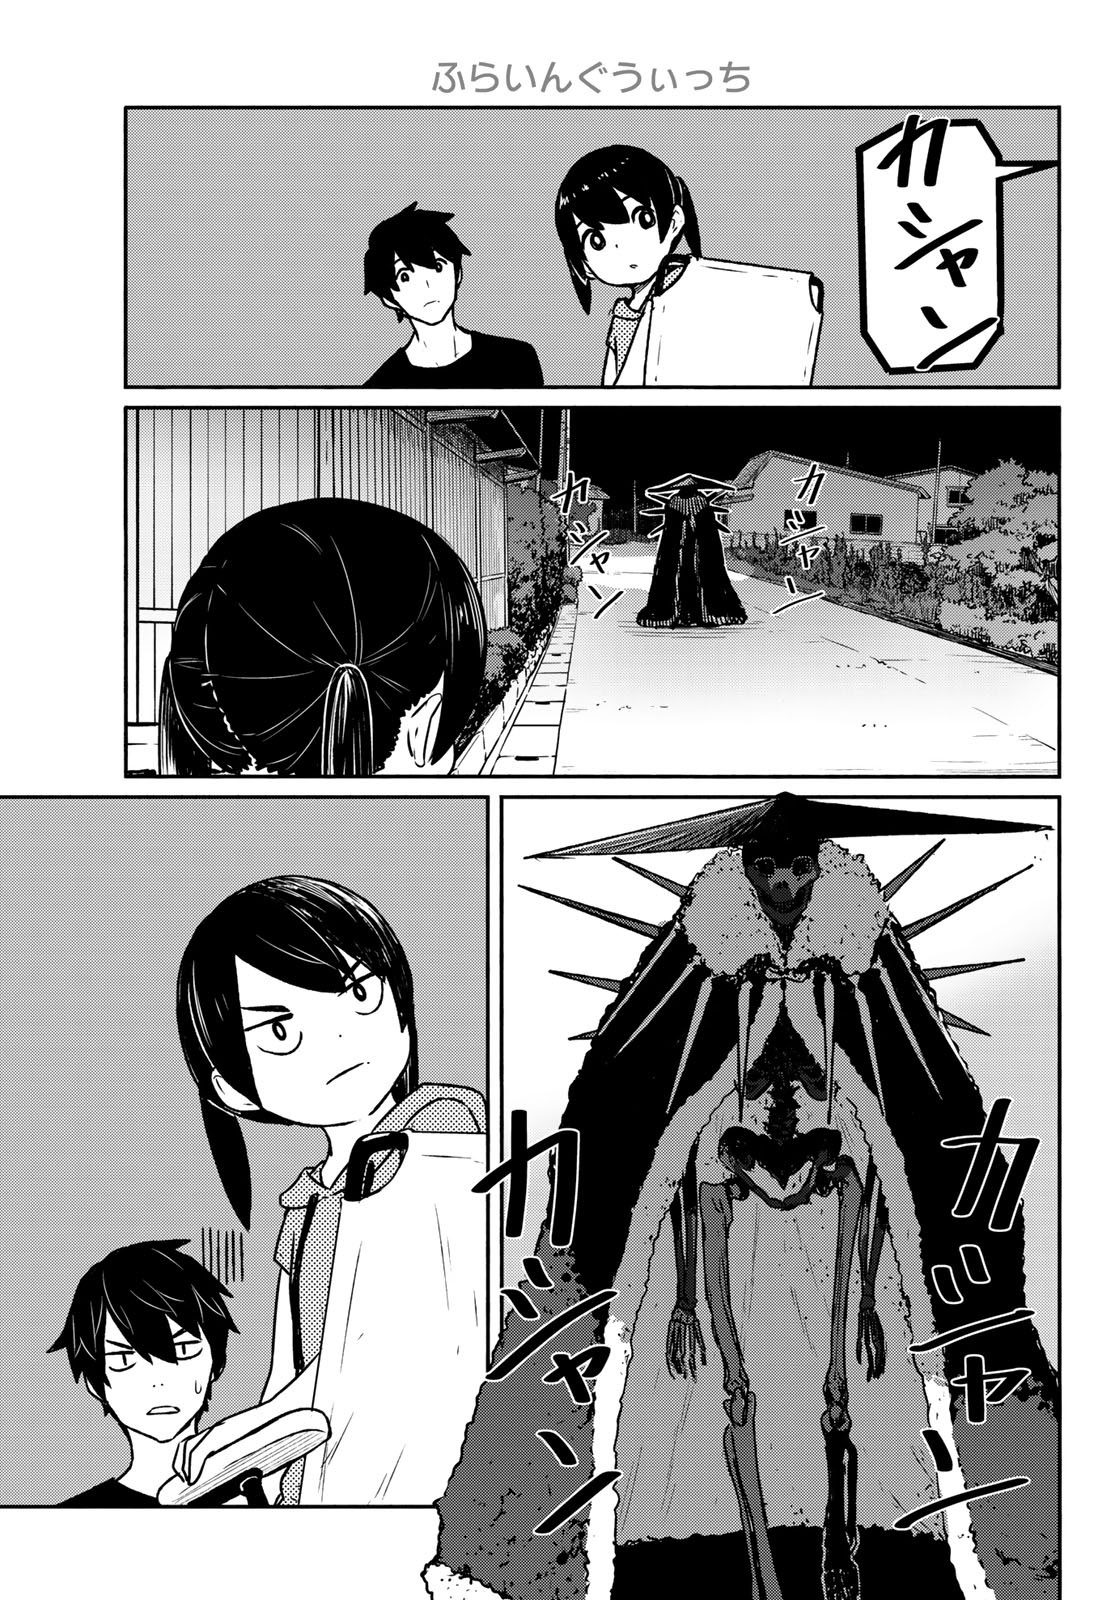 Flying Witch (Ishizuka Chihiro) - Page 3